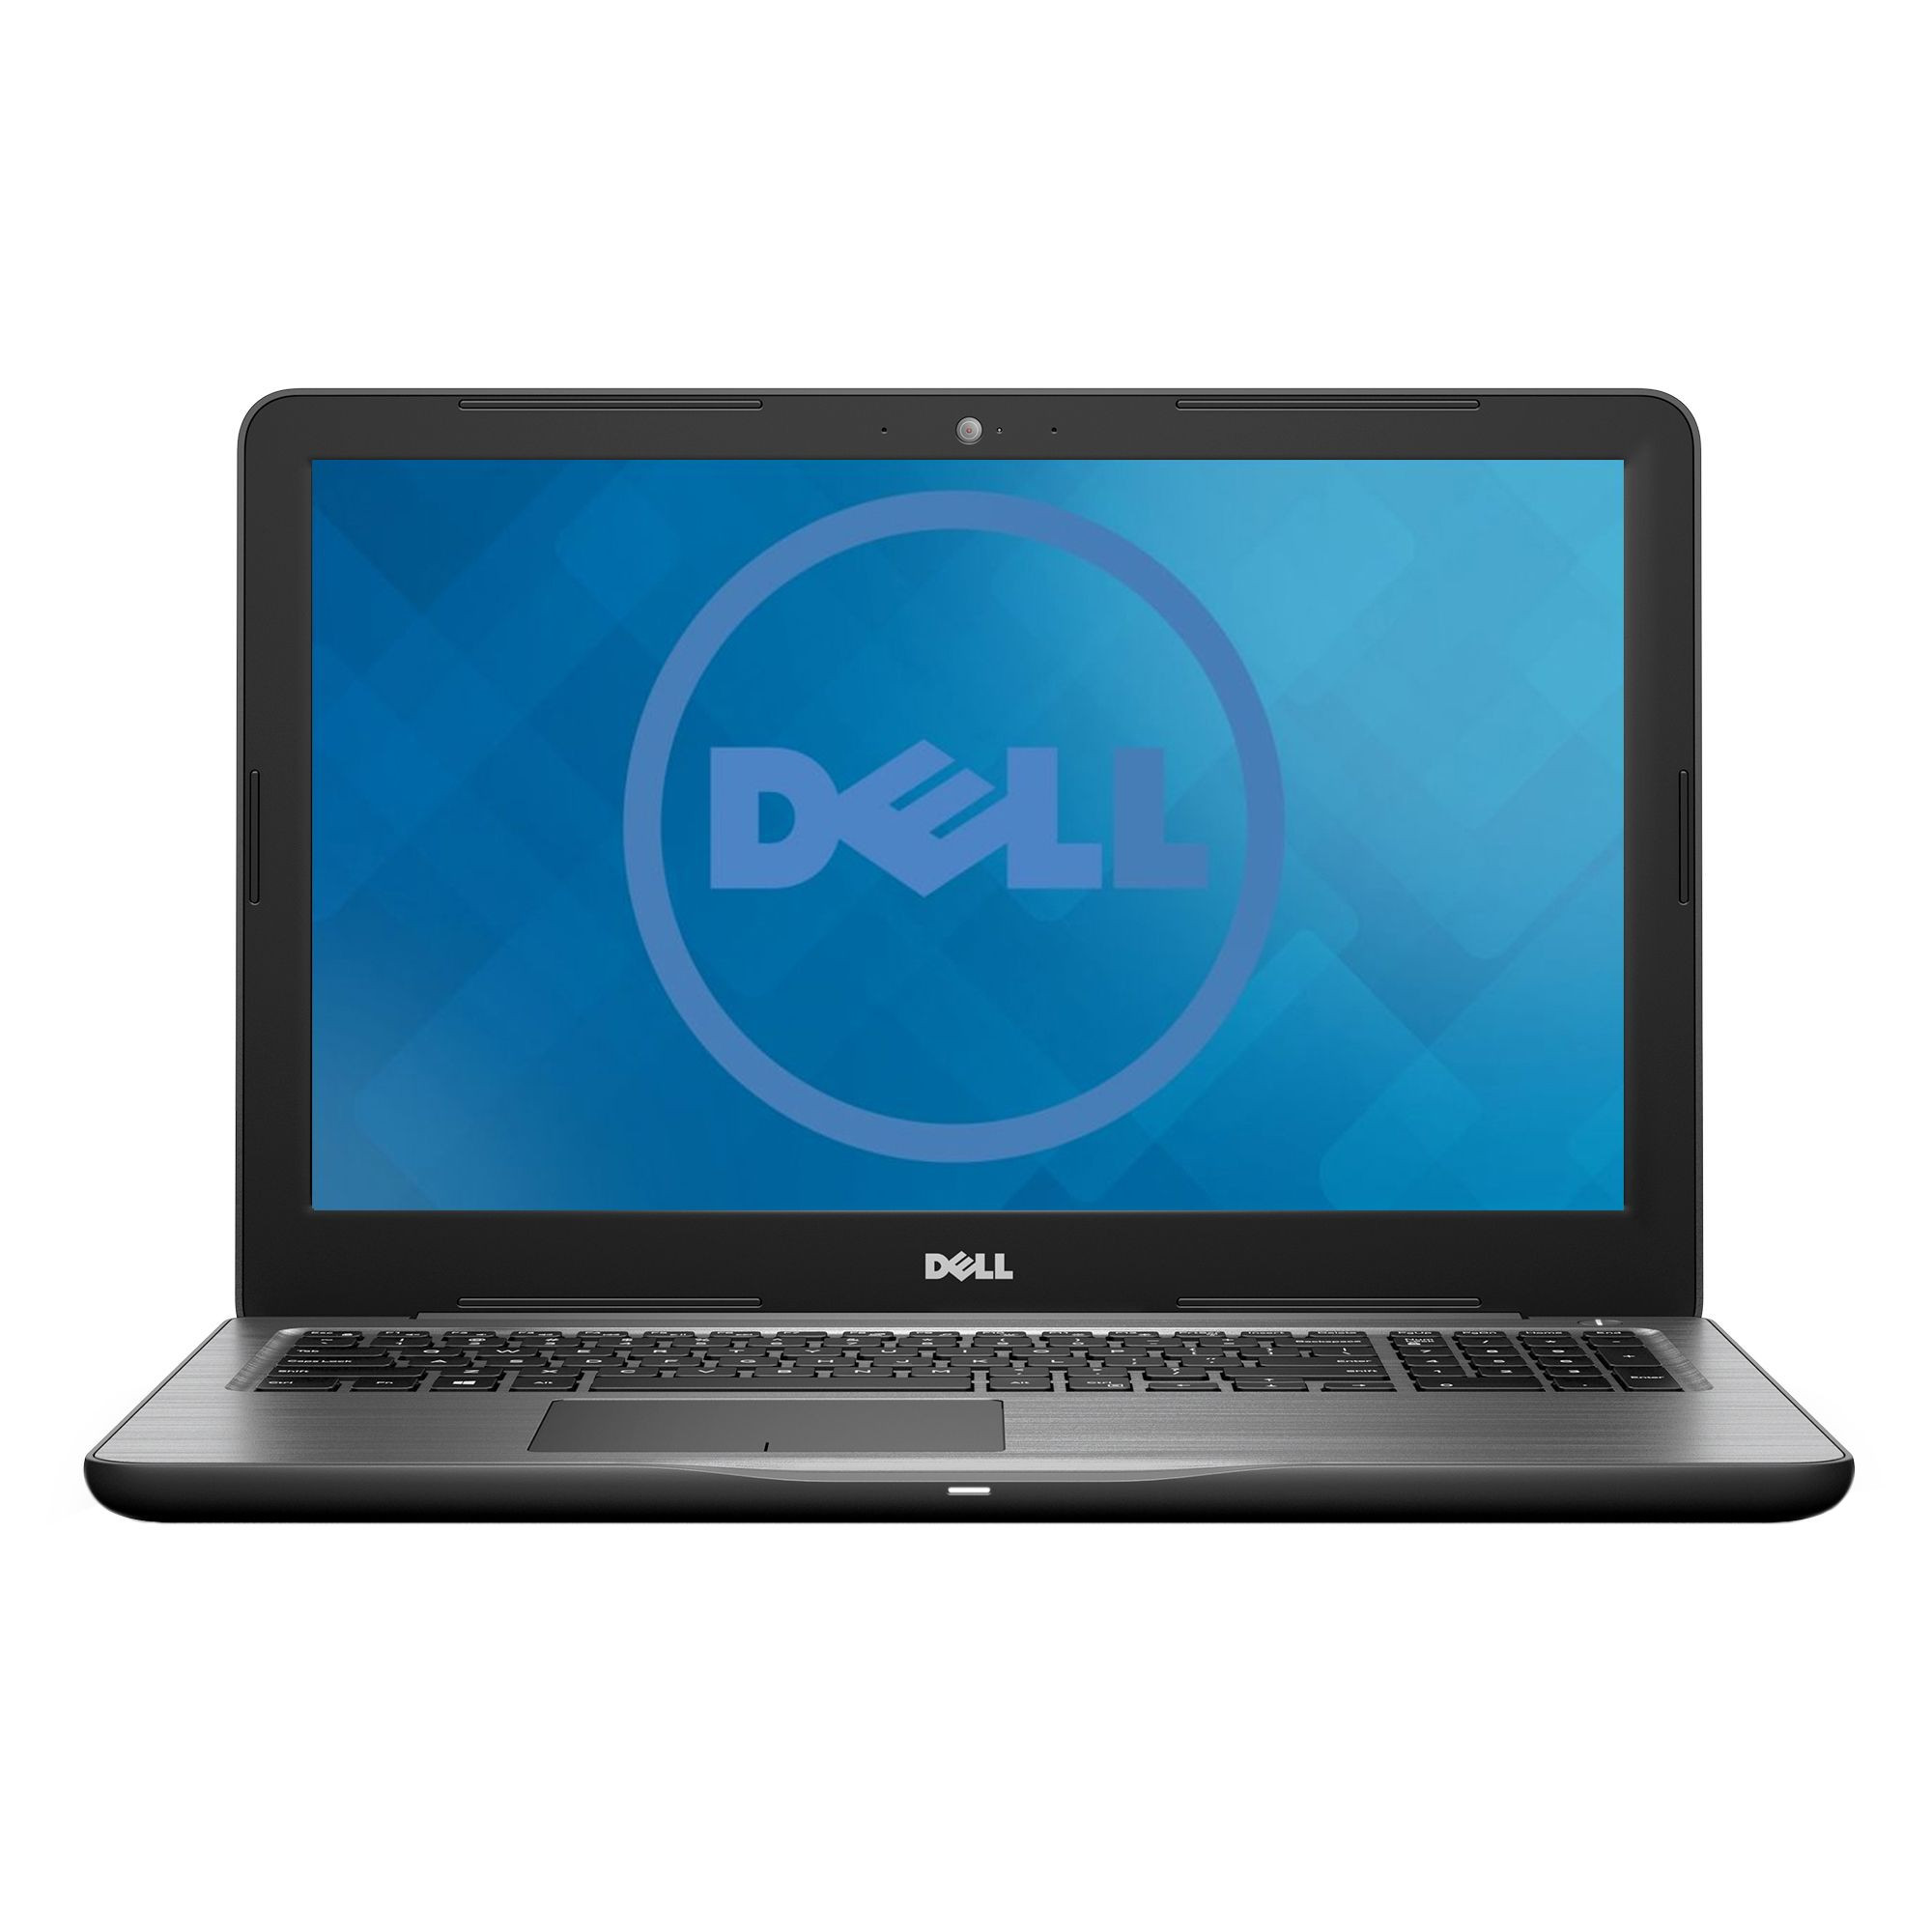 Laptop Dell Inspiron 5567, Intel Core i7-7500U, 8GB DDR4, HDD 1TB, AMD Radeon R7 M445 4GB, Linux